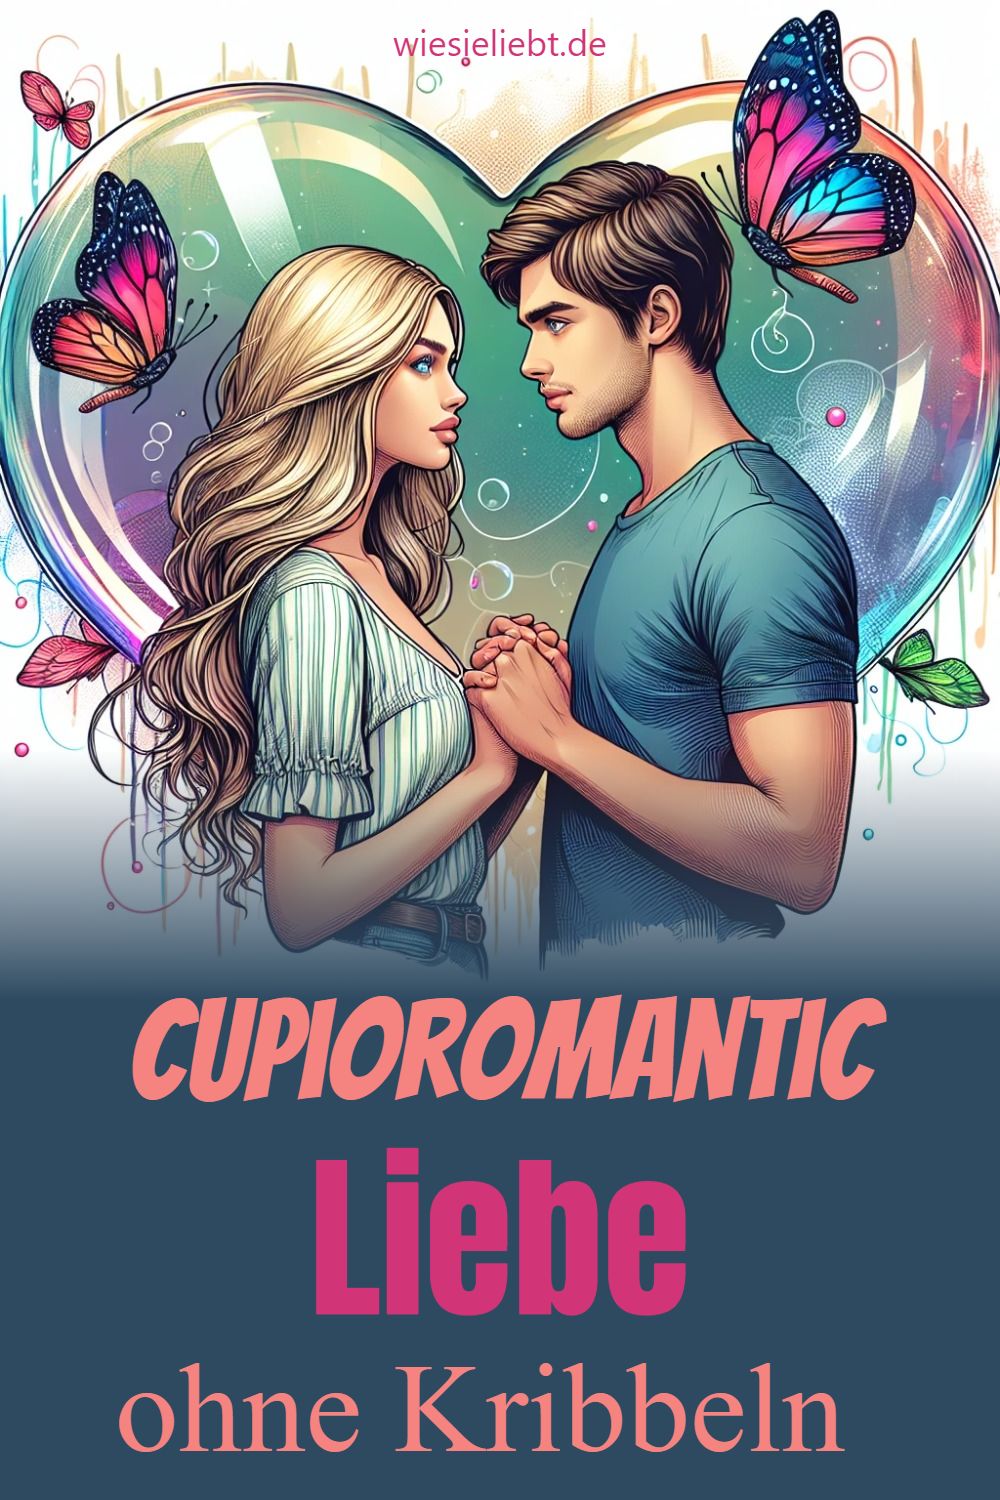 Cupioromantic Liebe ohne Kribbeln